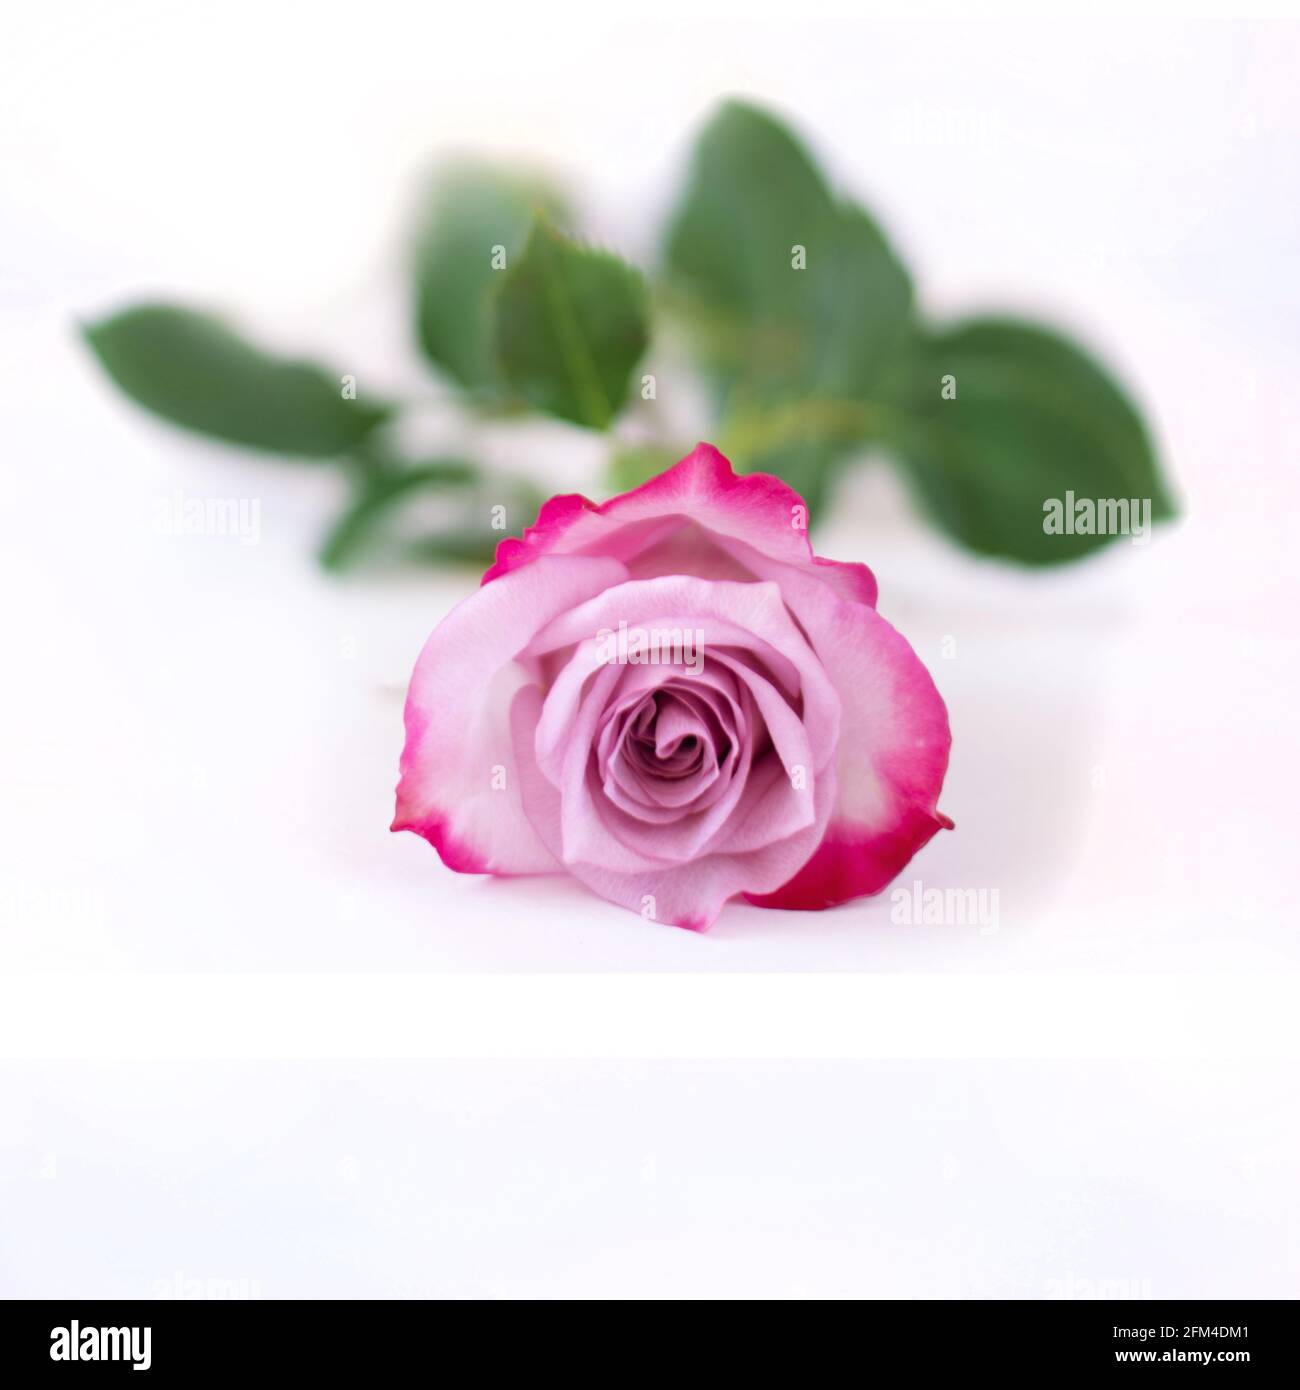 Schatten der rose -Fotos und -Bildmaterial in hoher Auflösung – Alamy